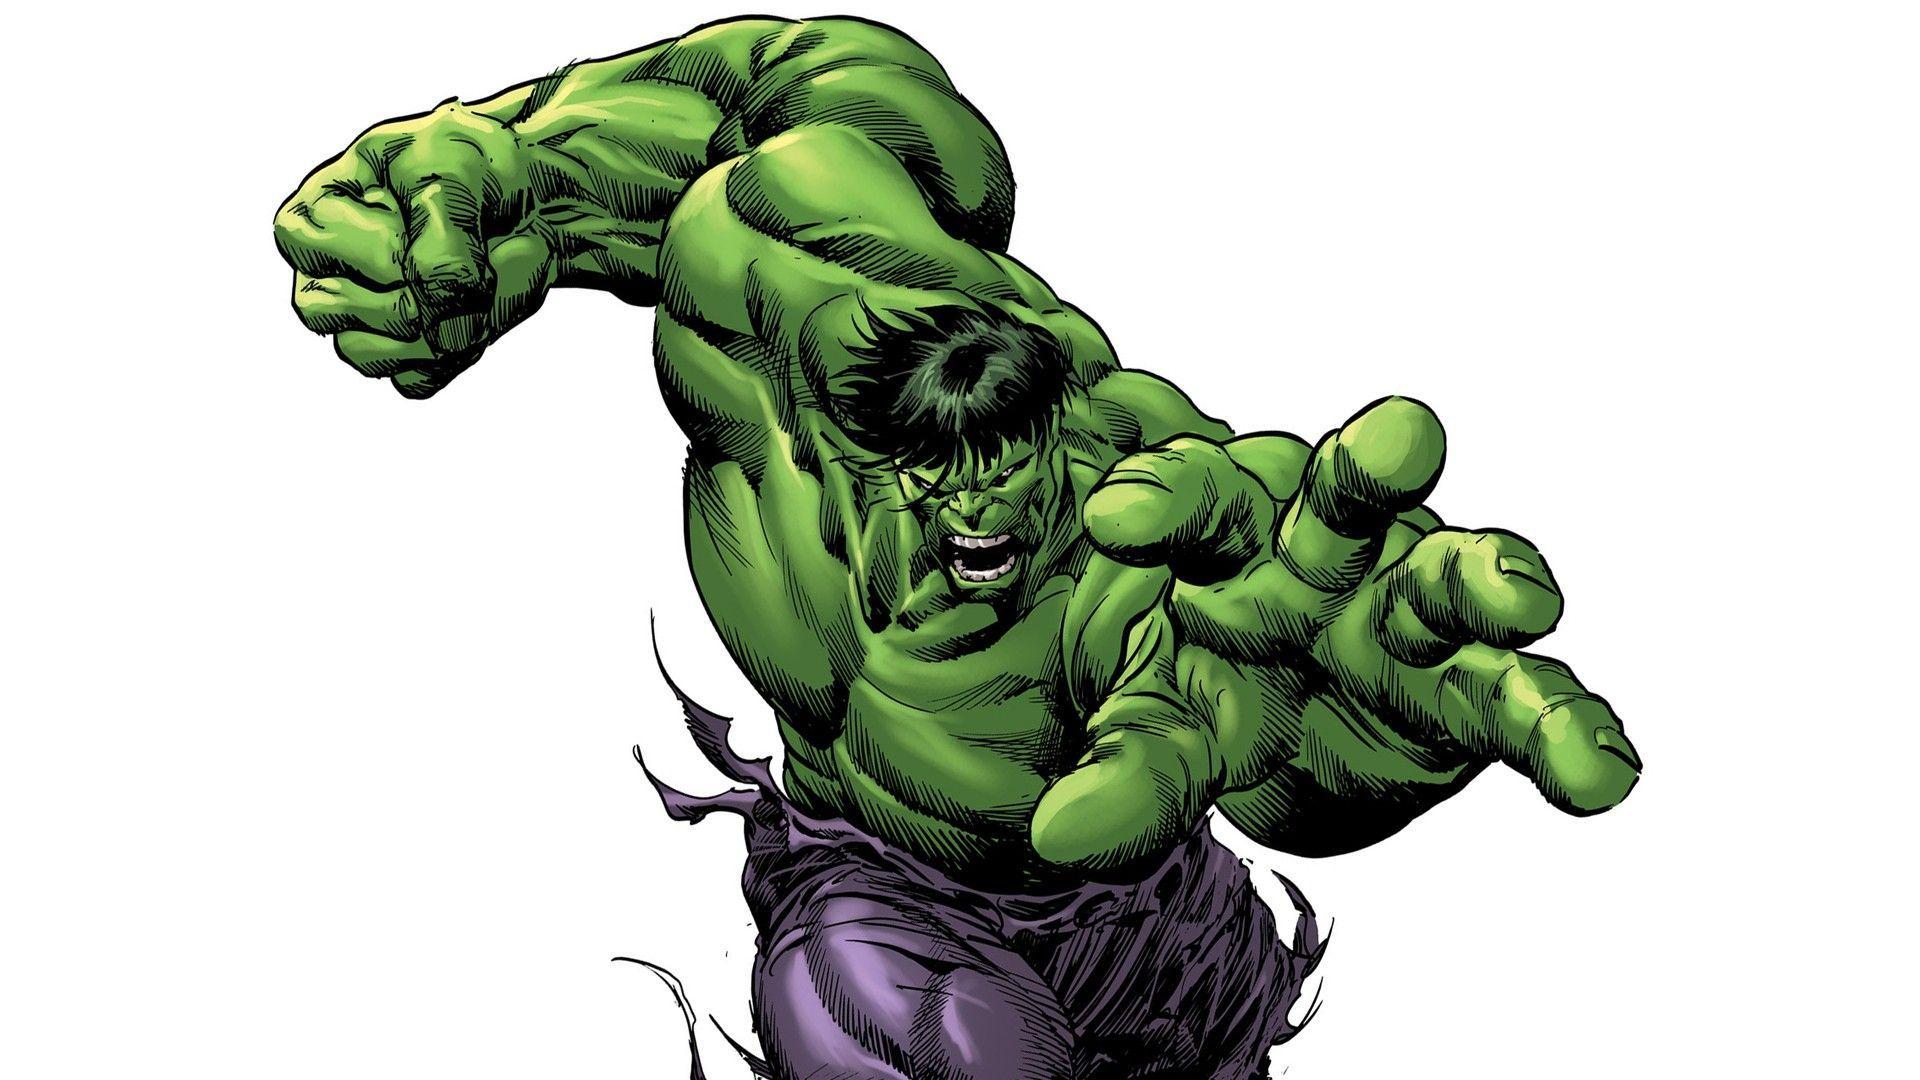 1920x1080 Hình nền Hulk 1920 .. Hình nền Hulk 1920 X 1080 - Id